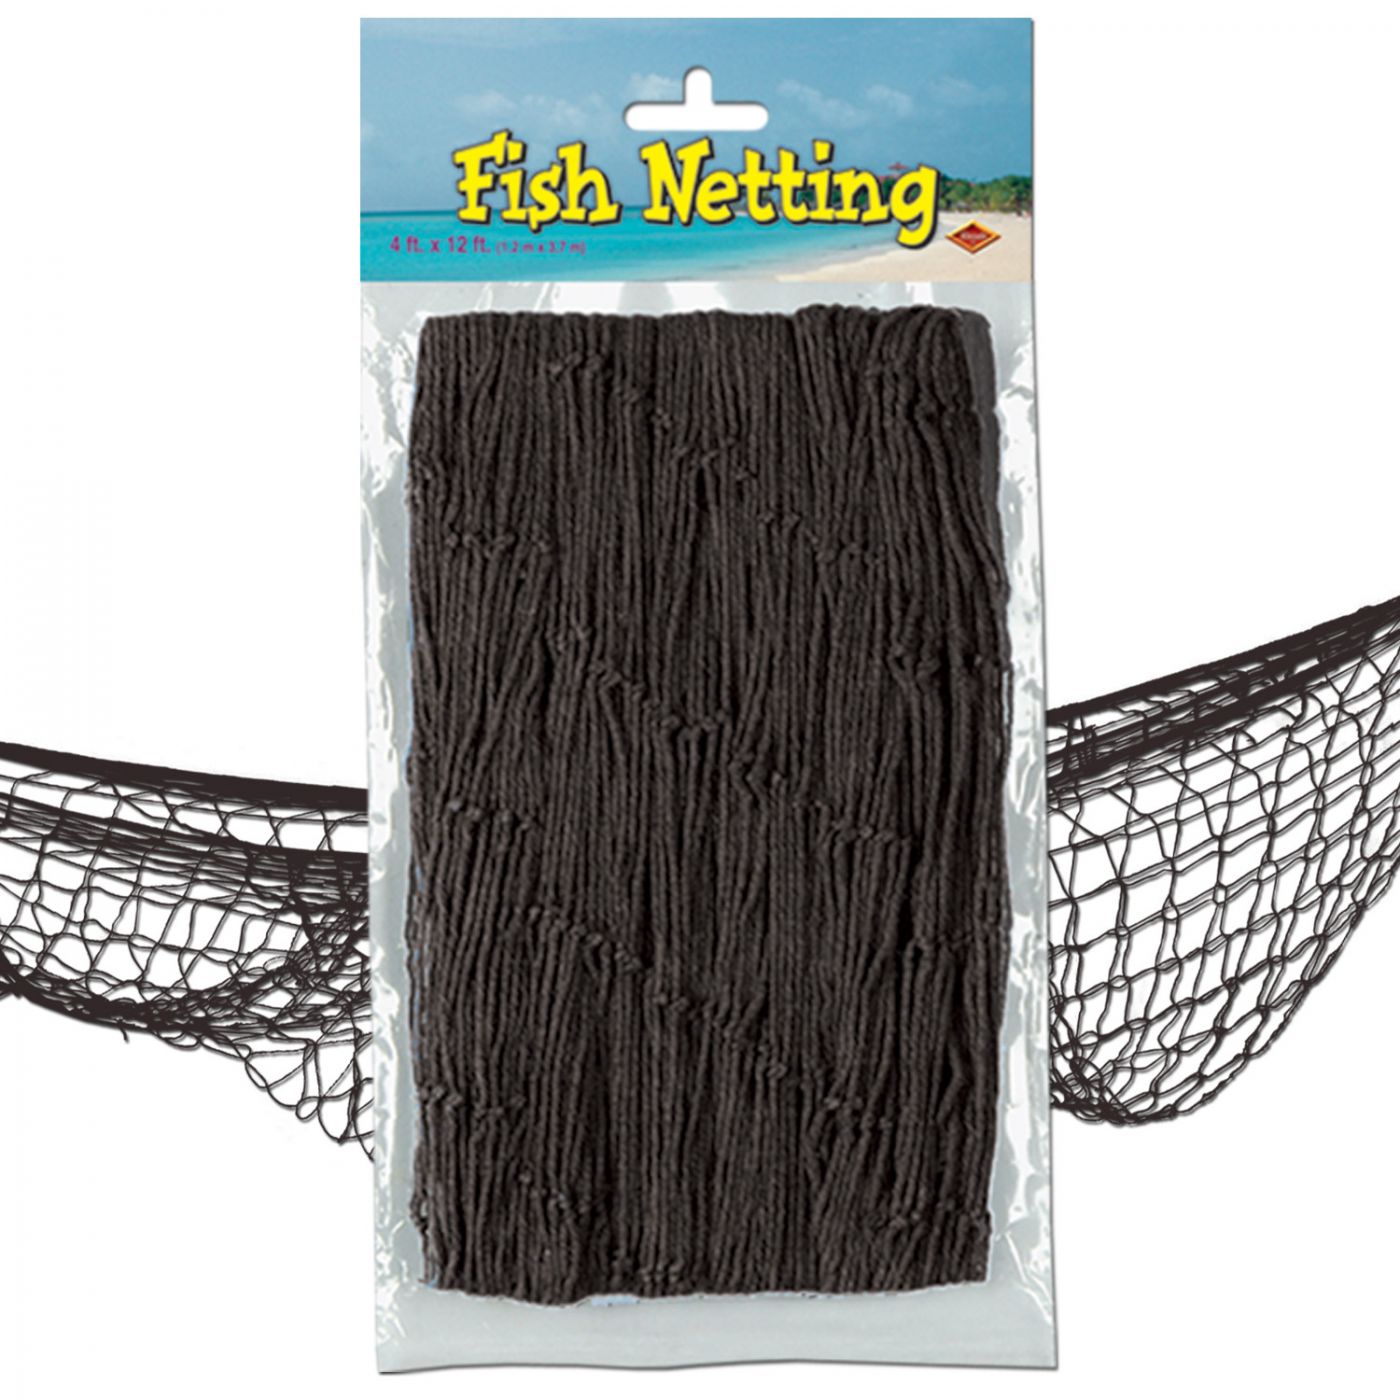 Fish Netting (12) image